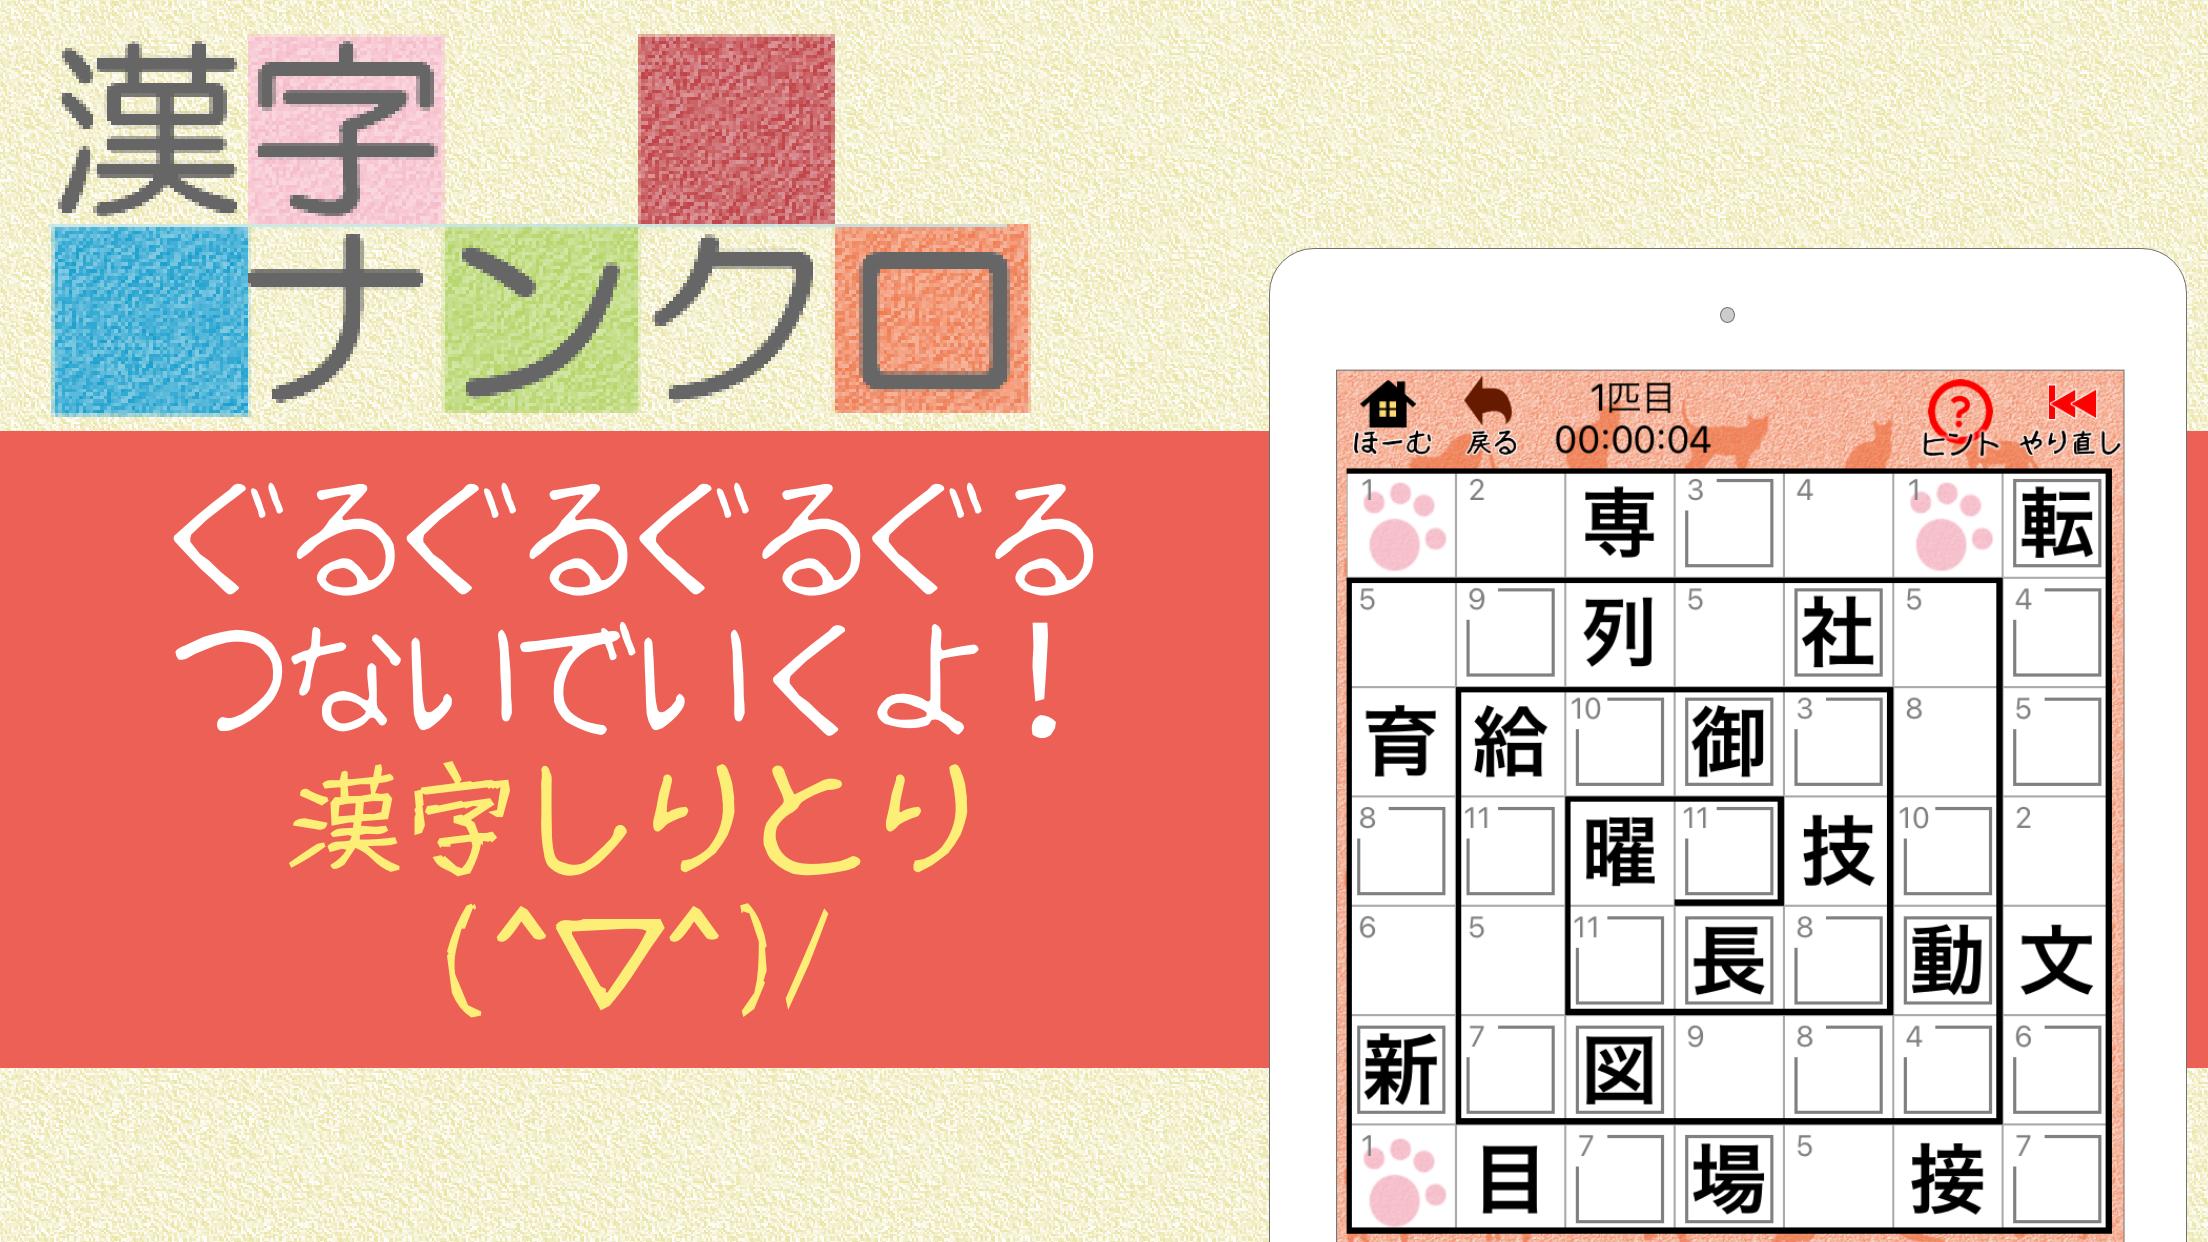 Android용 漢字ナンクロ ニャンパズ漢字クロスワード 脳トレできる漢字パズルゲーム Apk 다운로드